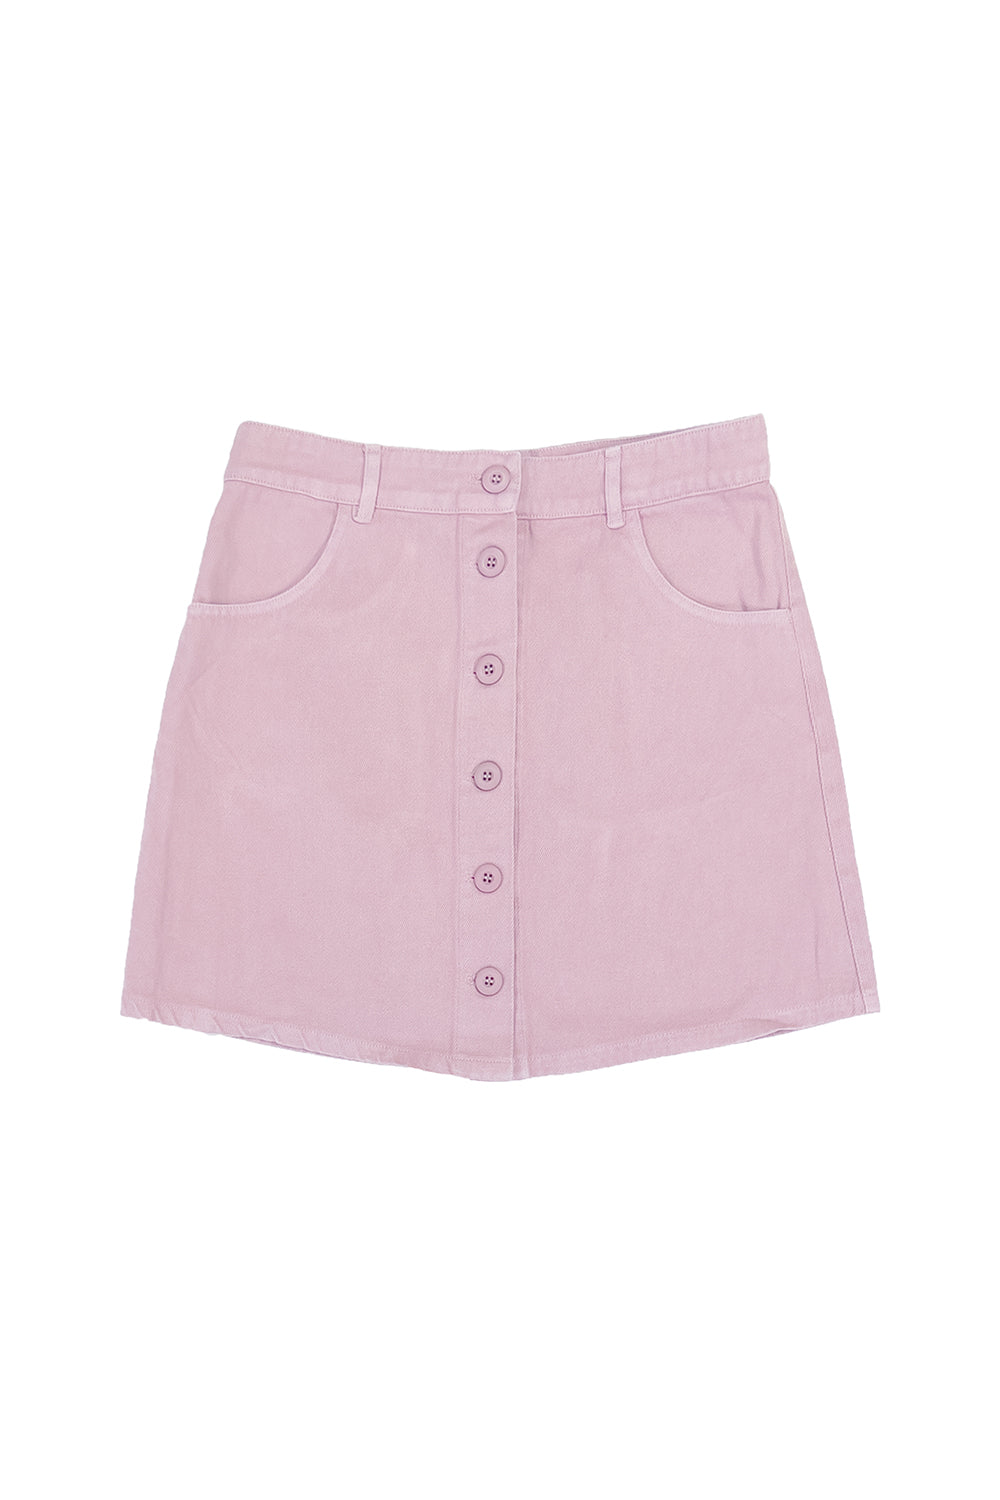 Vassar Skirt | Jungmaven Hemp Clothing & Accessories / Color: Rose Quartz